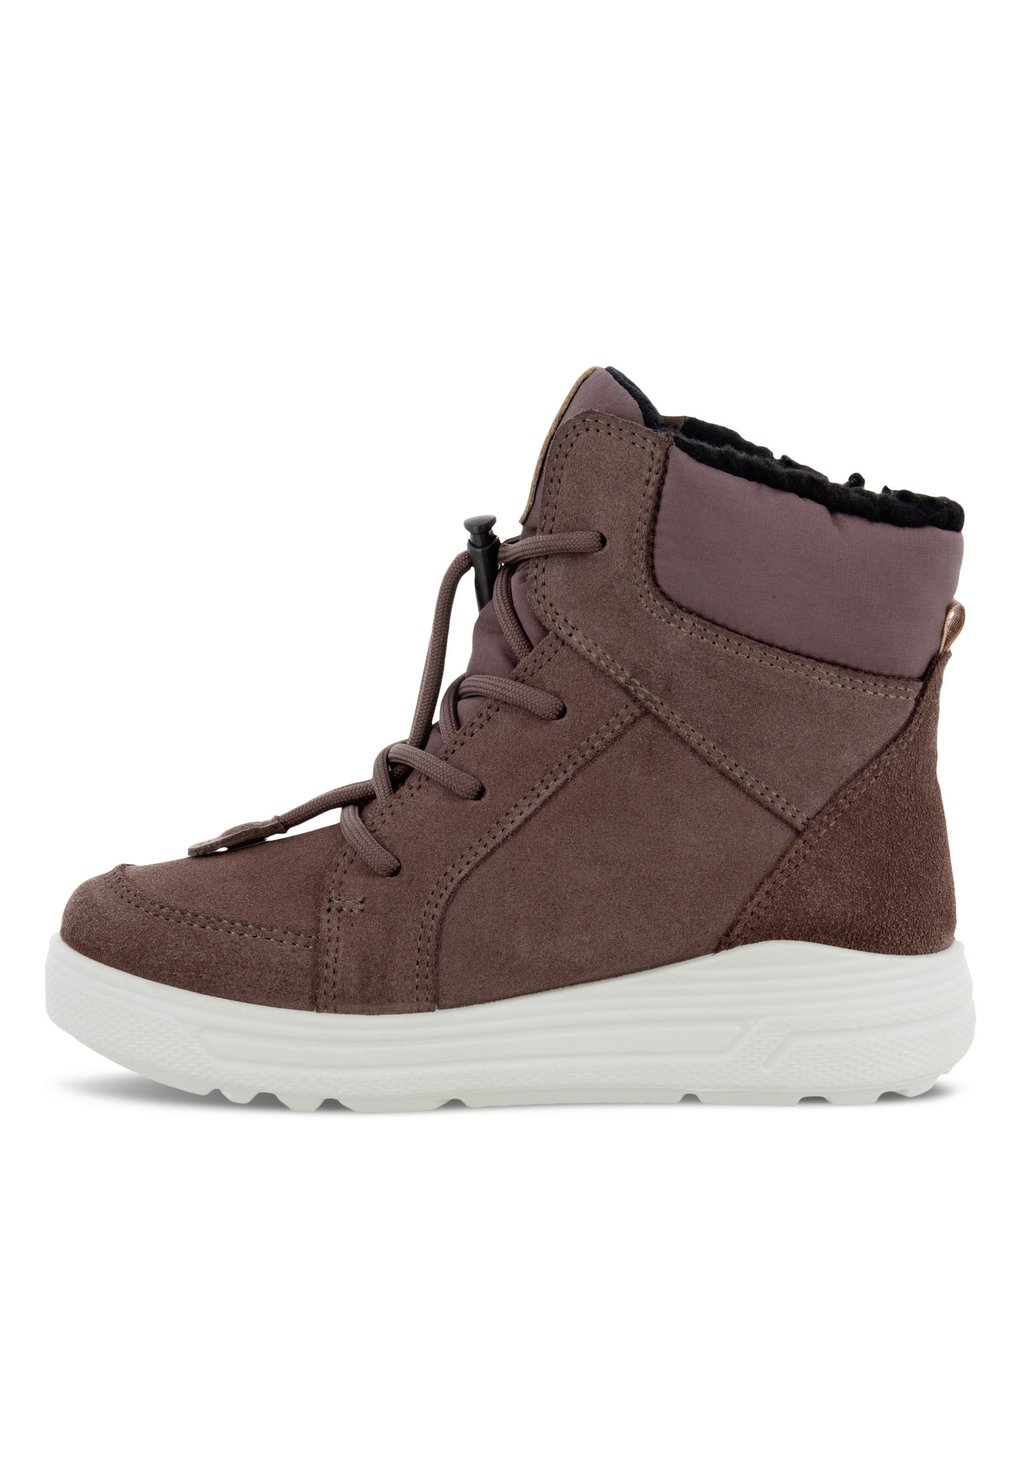 Зимние ботинки Urban Snowboarder ECCO, коричневый ботинки ecco urban snowboarder черный 33 размер